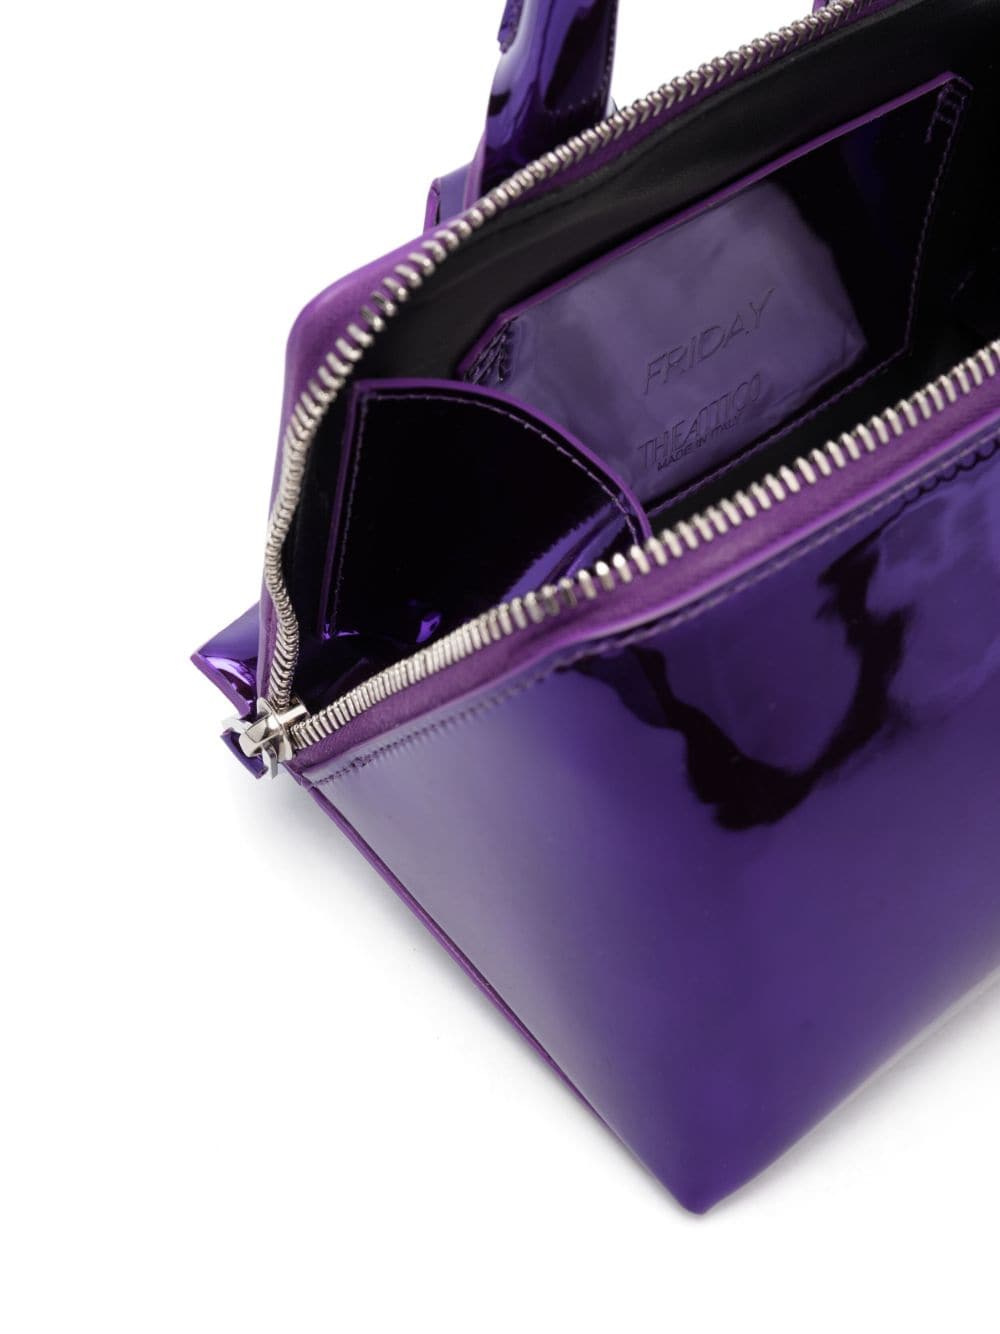 Friday Tote Handbag - Purple, Silver Hardware, Top Zip Closure